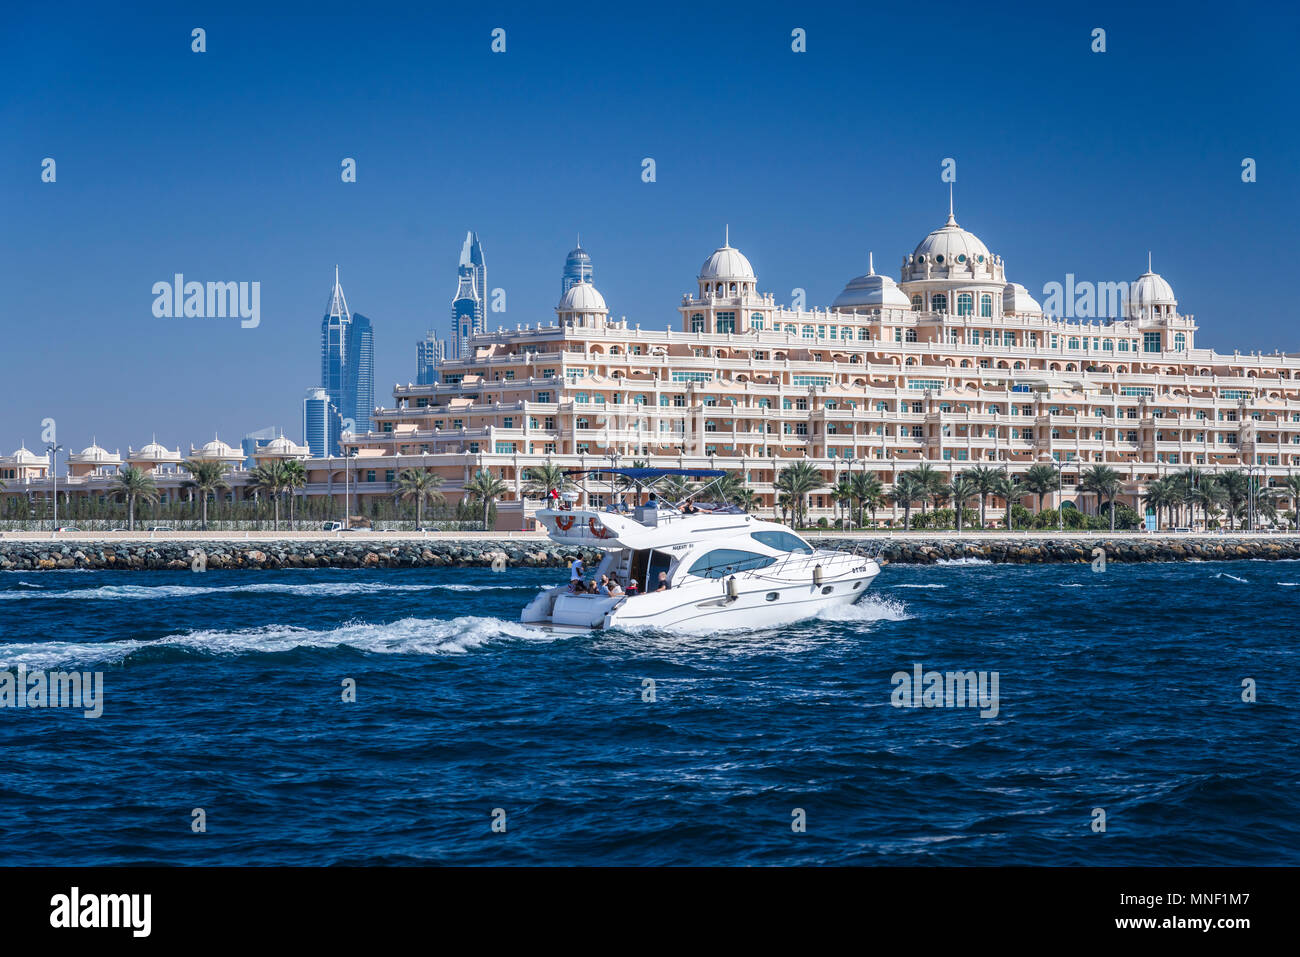 Das Kempinski Hotel und Residenzen auf der Palm Jumeirah Inseln vor der Küste von Dubai, Vereinigte Arabische Emirate, Naher Osten. Stockfoto